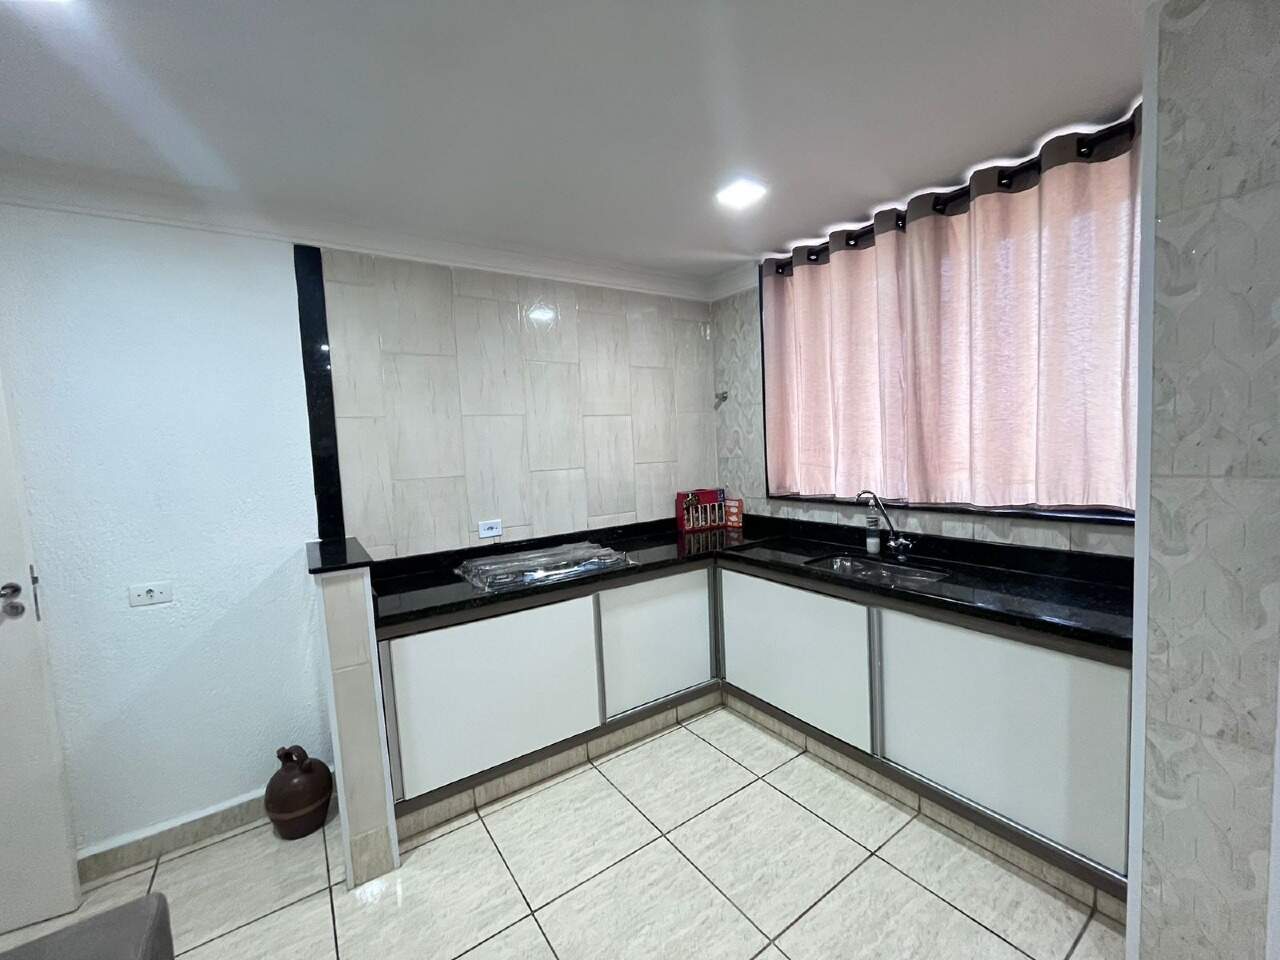 Casa à venda, 3 quartos, sendo 1 suíte, 2 vagas, no bairro Parque Residencial Monte Rey em Piracicaba - SP